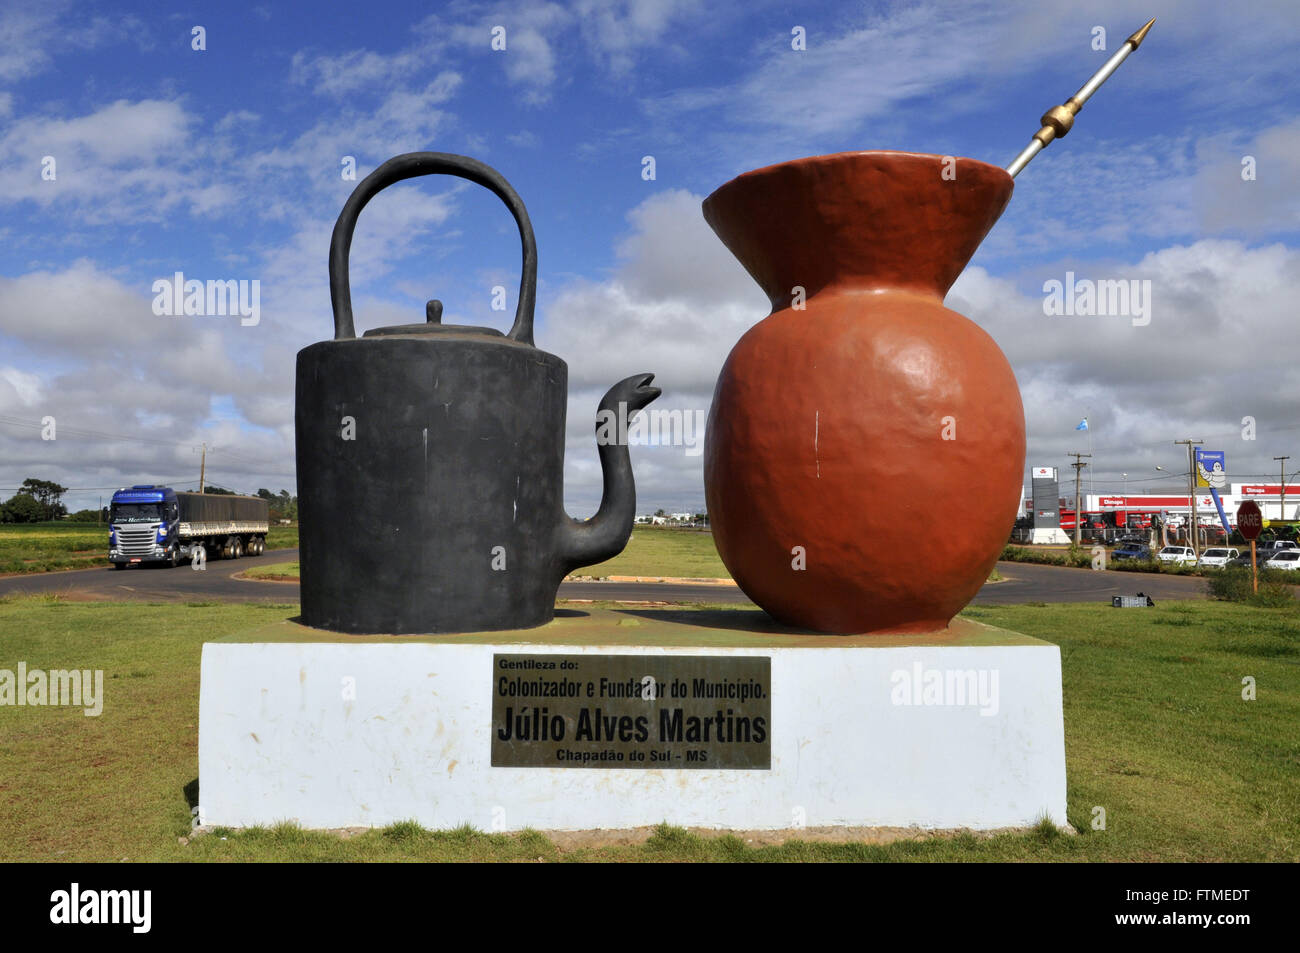 Denkmal mit Wasserkocher Kürbis und als Symbol für die Tradition der Gauchos Chimarrao Pumpe Stockfoto